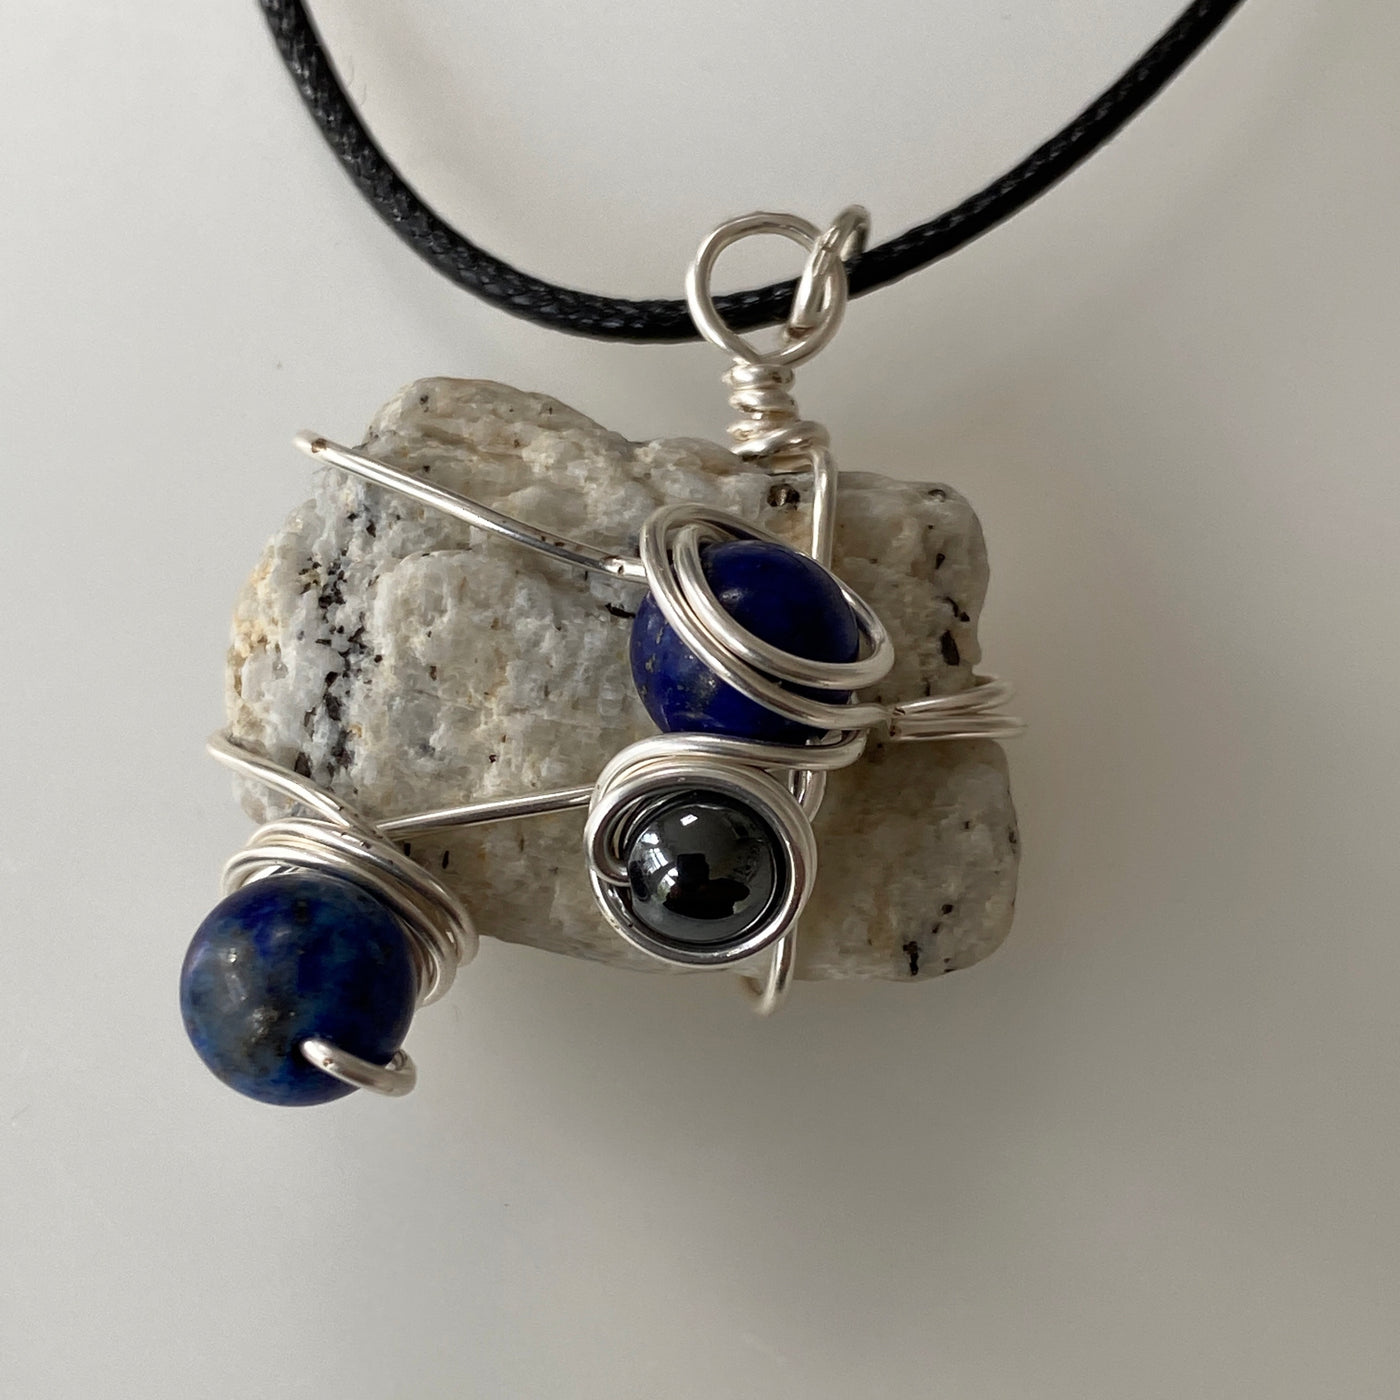 Small pendant featuring white natural stone, lapislazzuli, hematite and silver wire